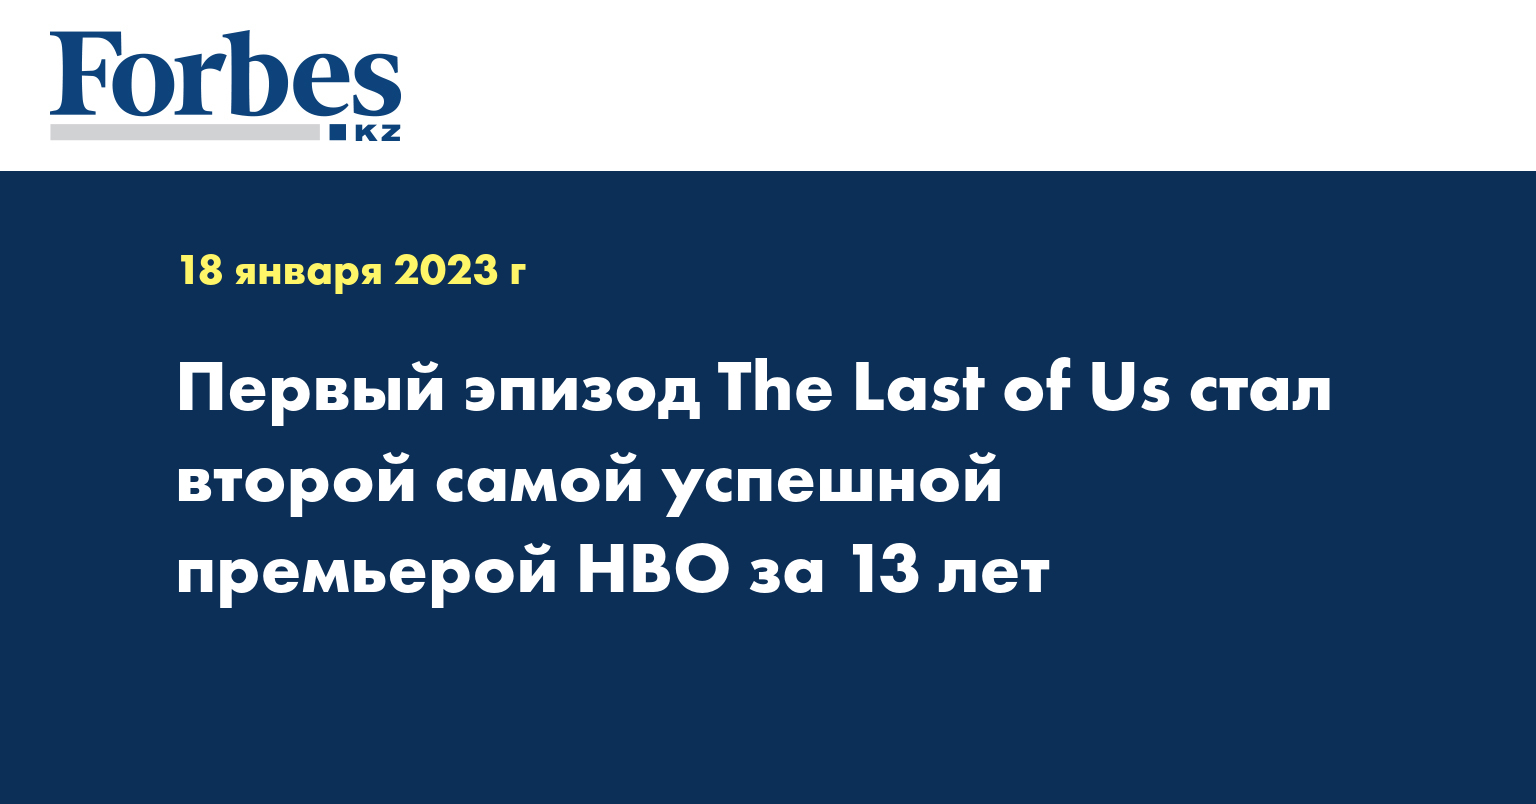 Первый эпизод The Last of Us стал второй самой успешной премьерой HBO за 13 лет